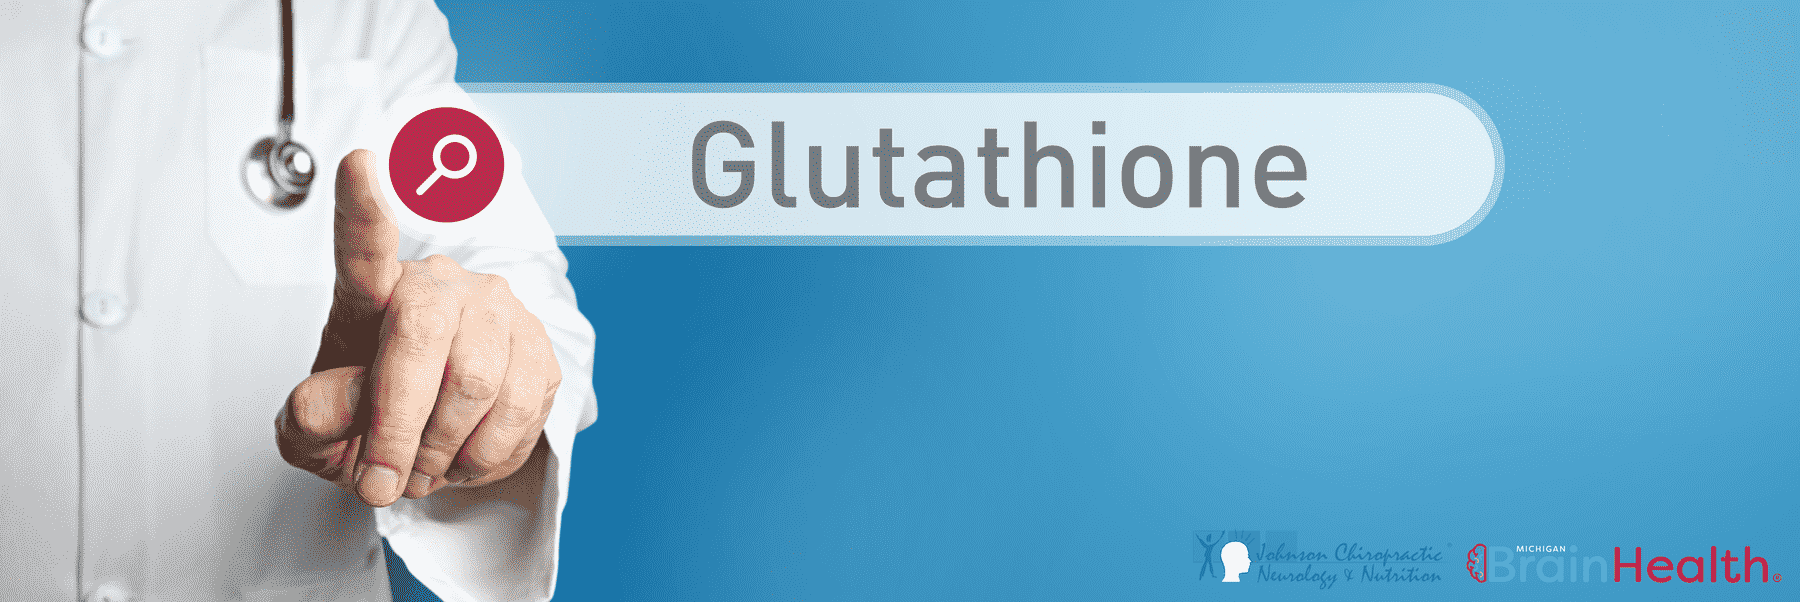 AdobeStock_Glutathione_Information-blog